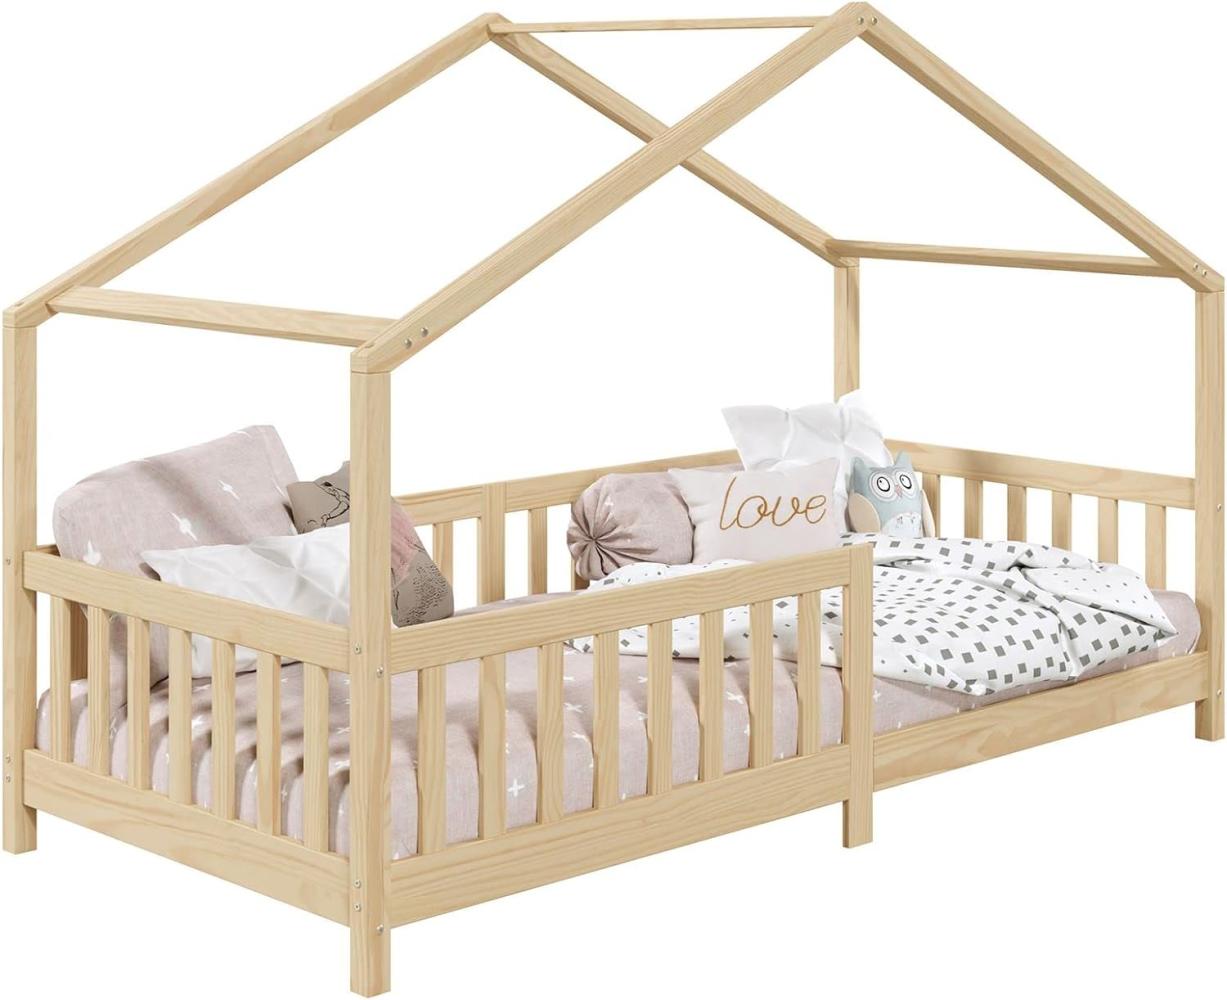 IDIMEX Hausbett LISAN aus massiver Kiefer in Natur, schönes Montessori Bett in 90 x 200 cm, stabiles Kinderbett mit Rausfallschutz und Dach Bild 1